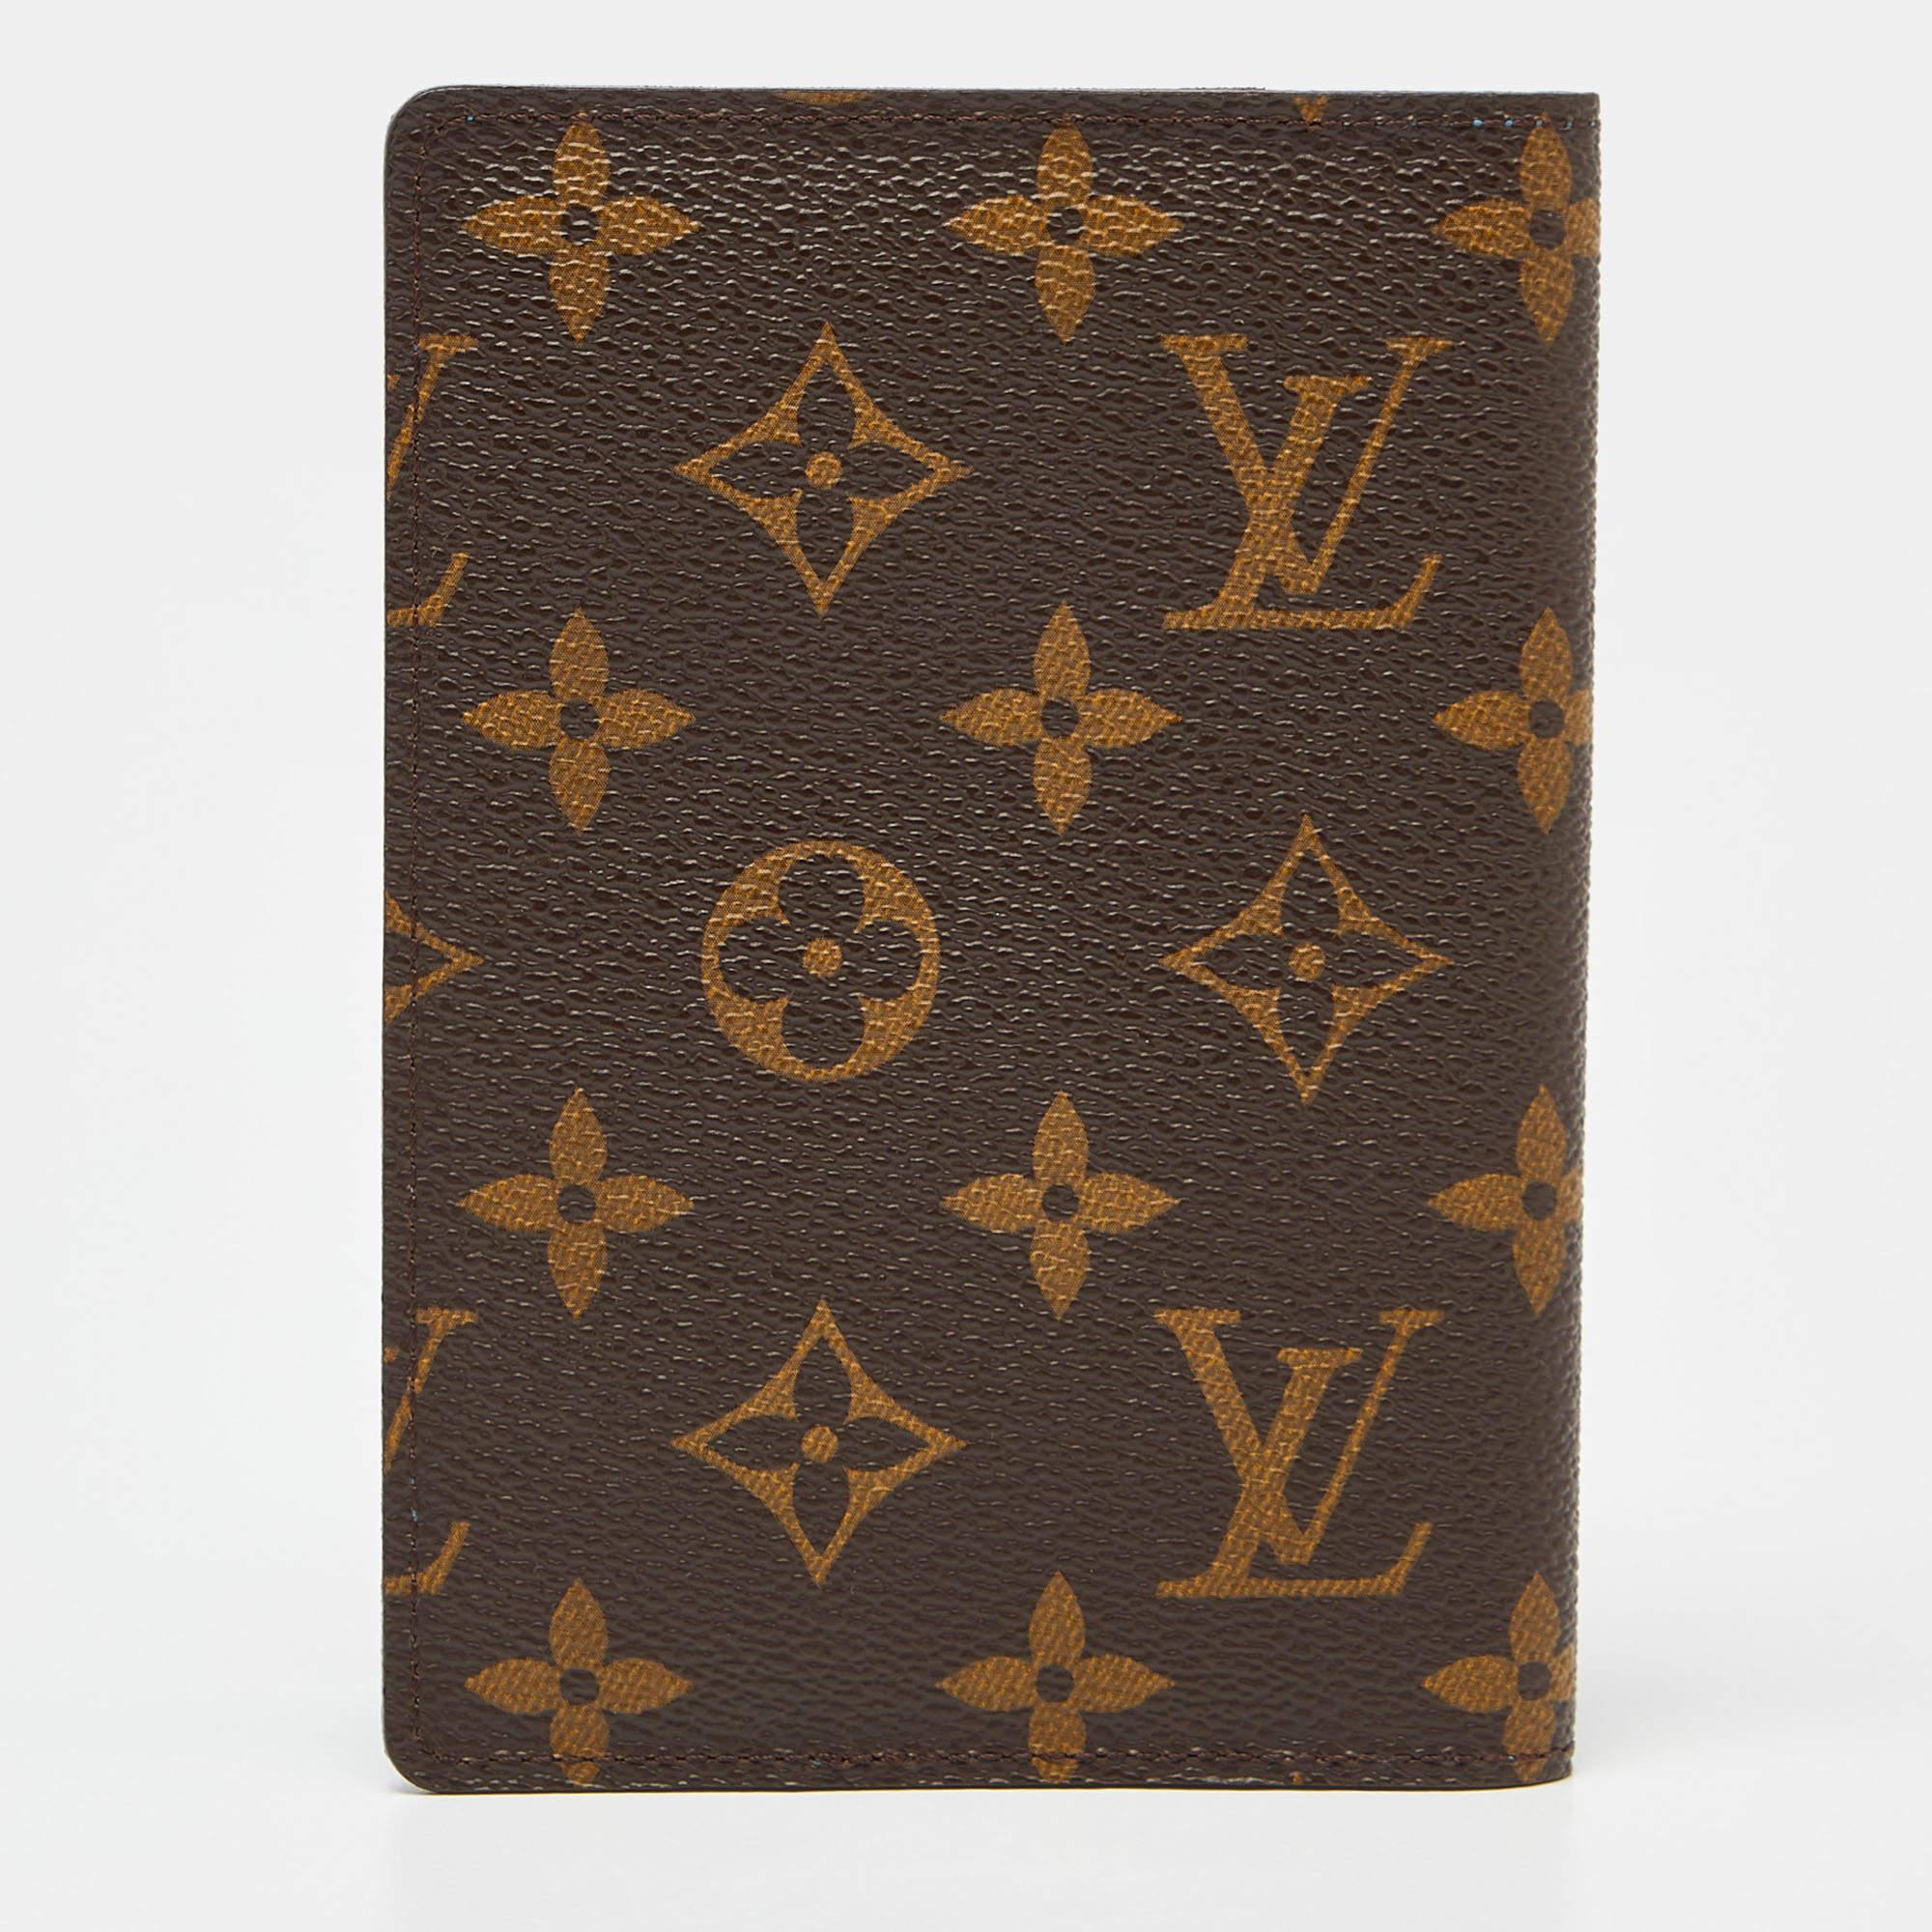 Die Louis Vuitton My LV Heritage-Reisepasshülle ist ein luxuriöses Reiseaccessoire. Sie ist aus dem kultigen LV-Monogramm-Canvas gefertigt und verfügt über ein schlankes Design, mehrere Kartenfächer und ein Reisepassfach, was sie zu einer eleganten